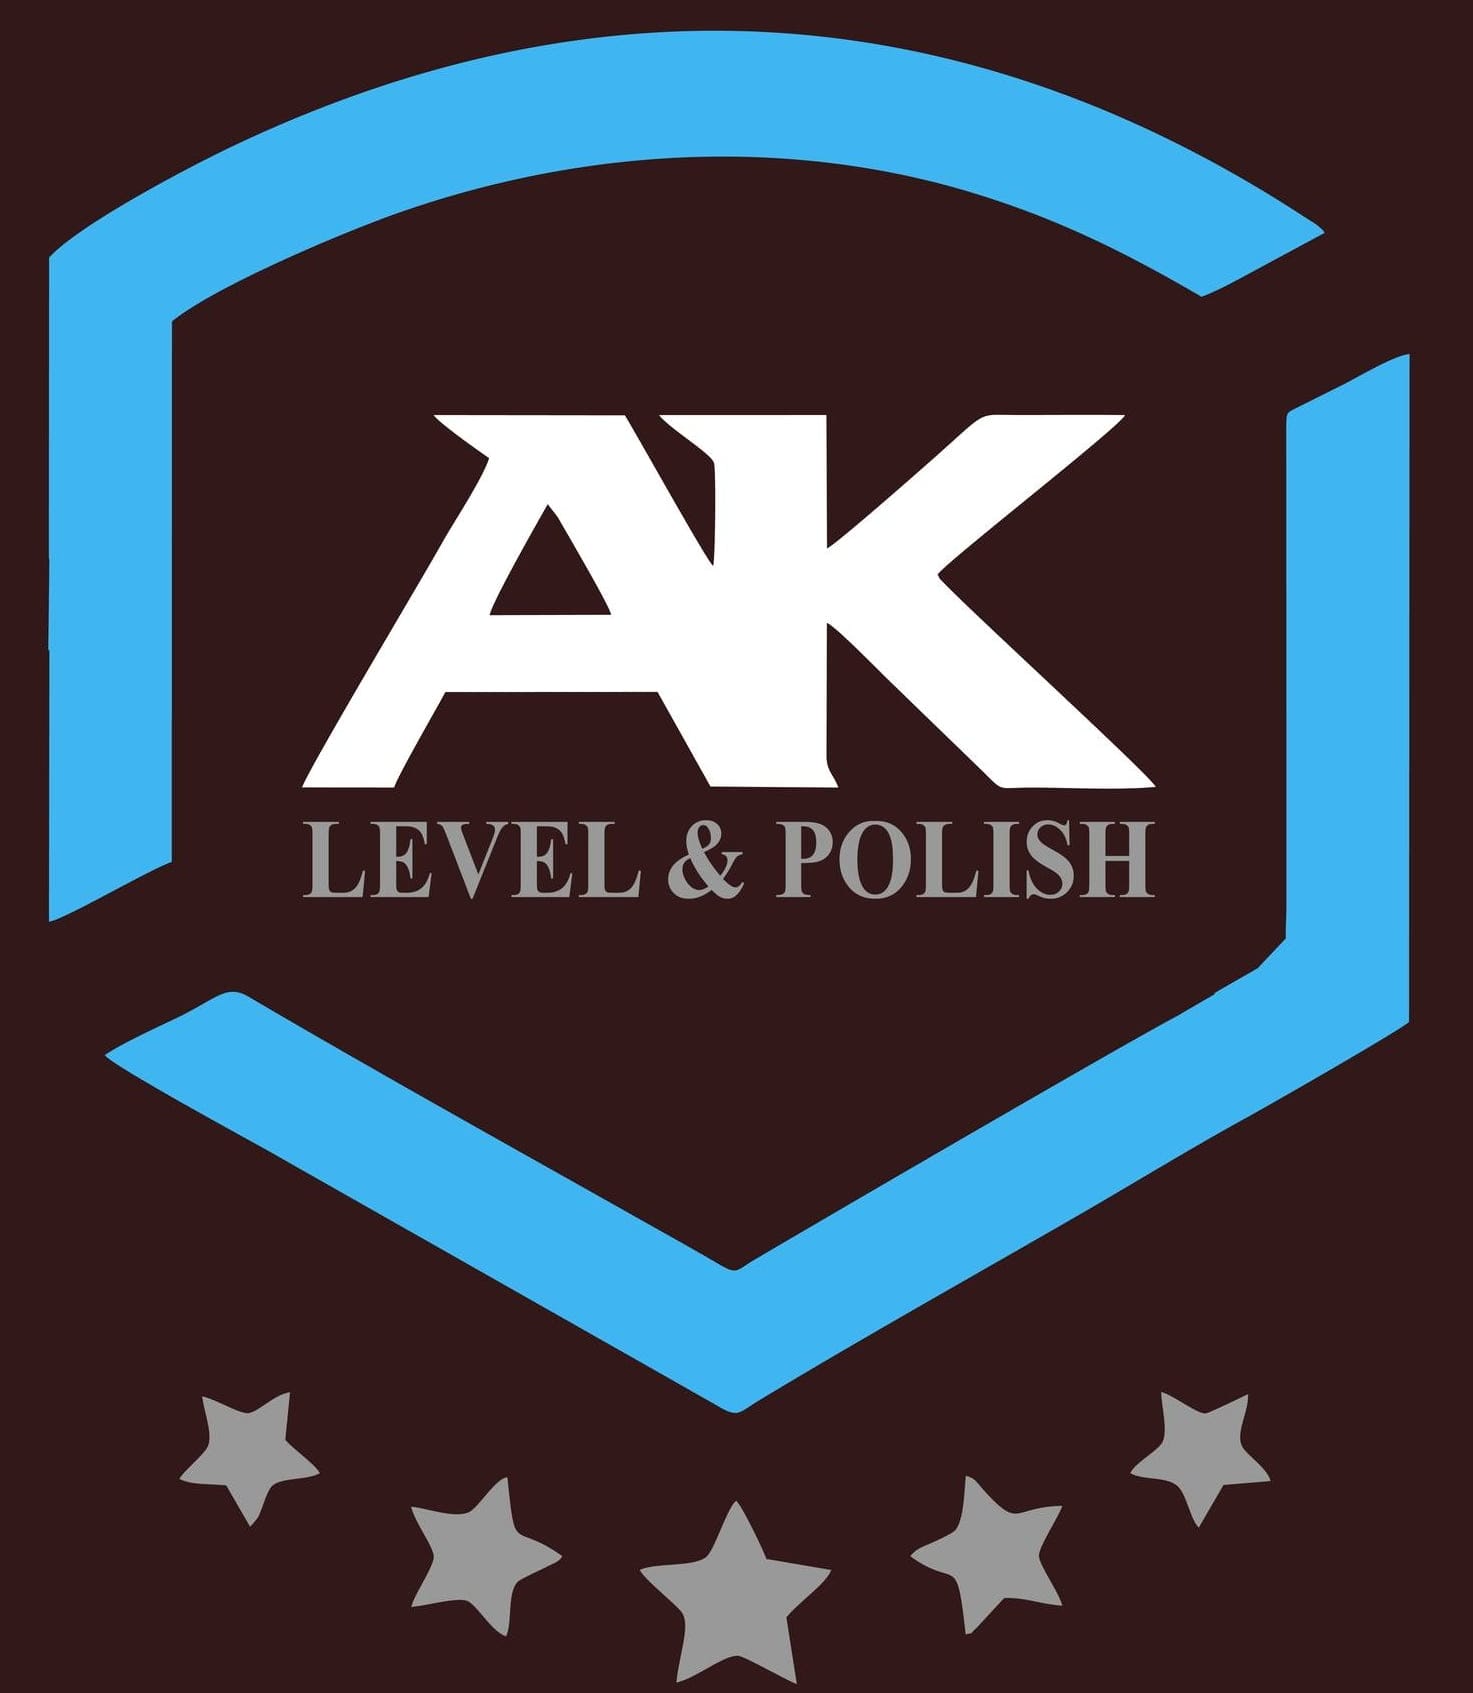 AK Level Polish Epoxy Toronto, logo for flooring tiles